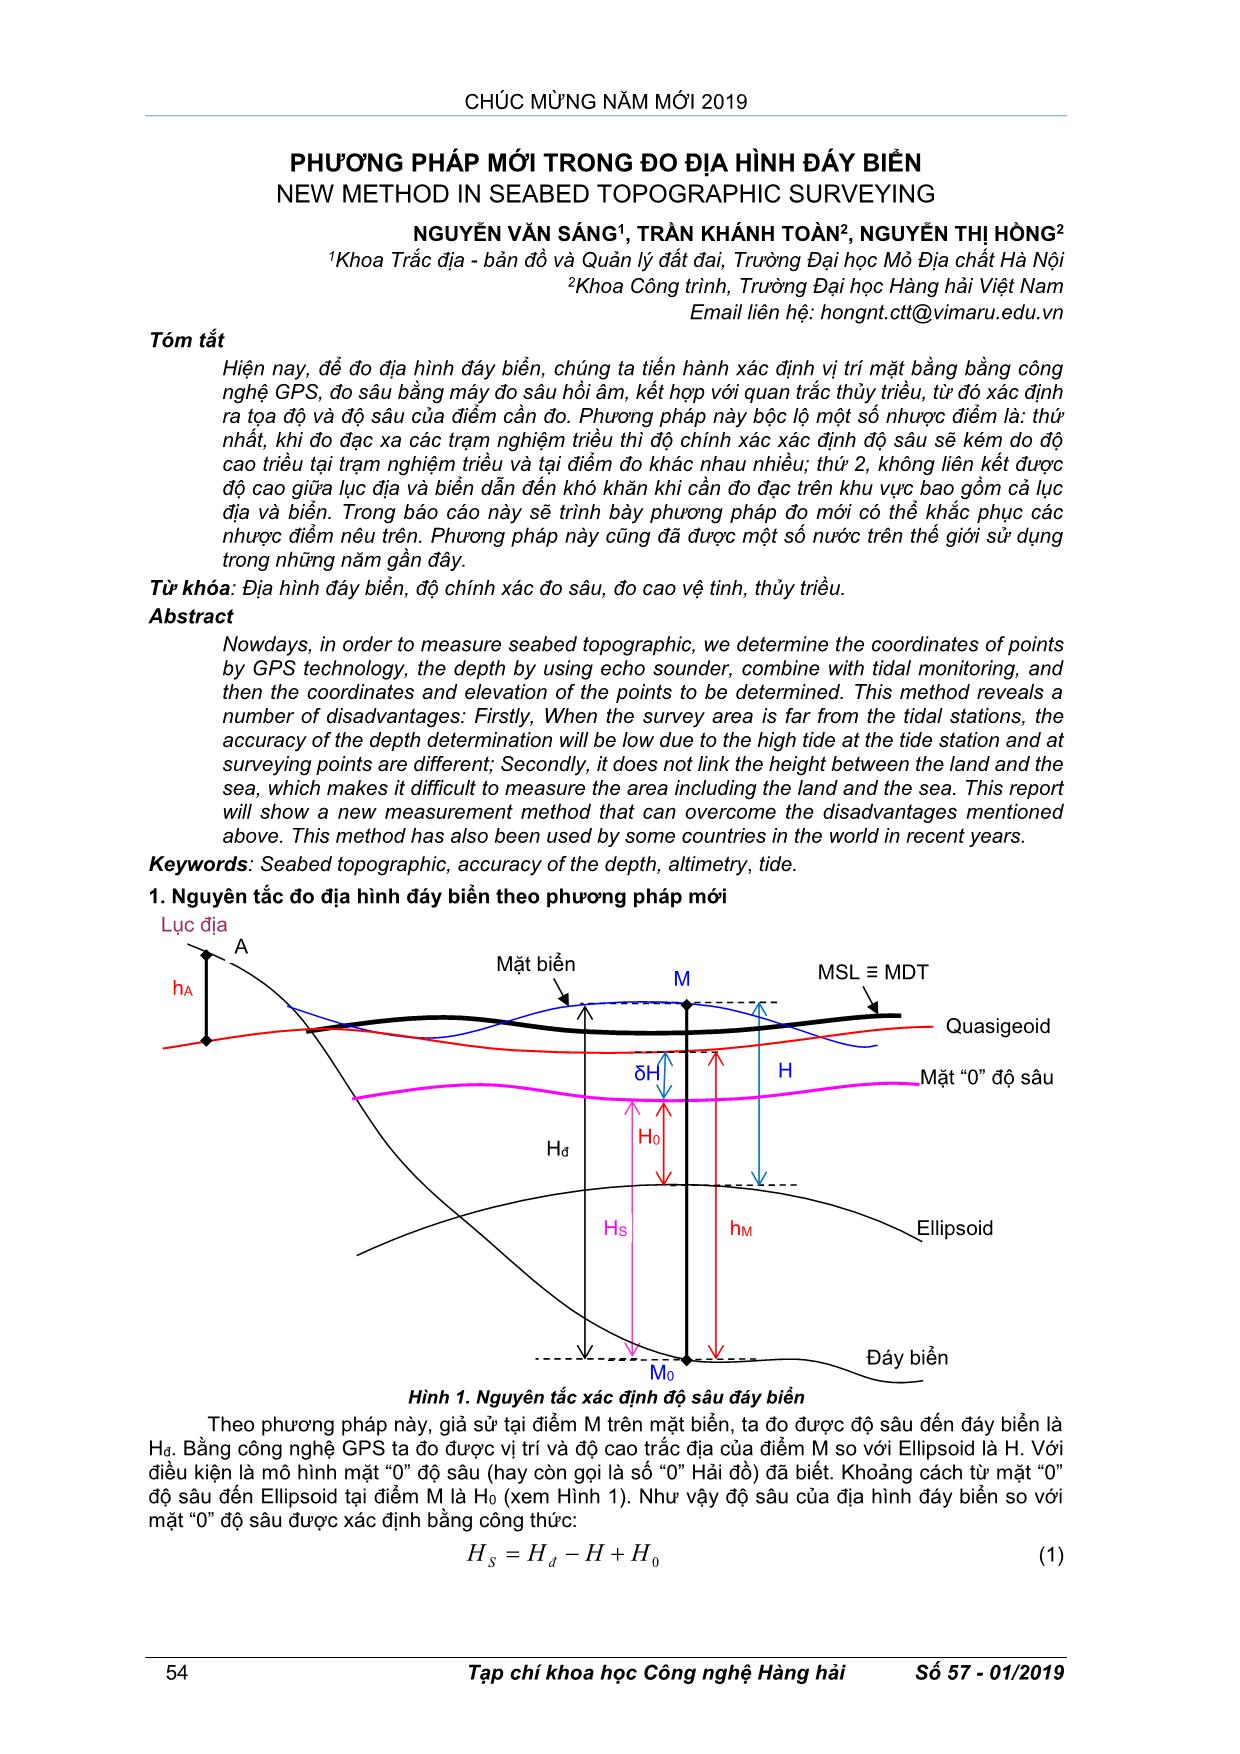 Phương pháp mới trong đo địa hình đáy biển trang 1